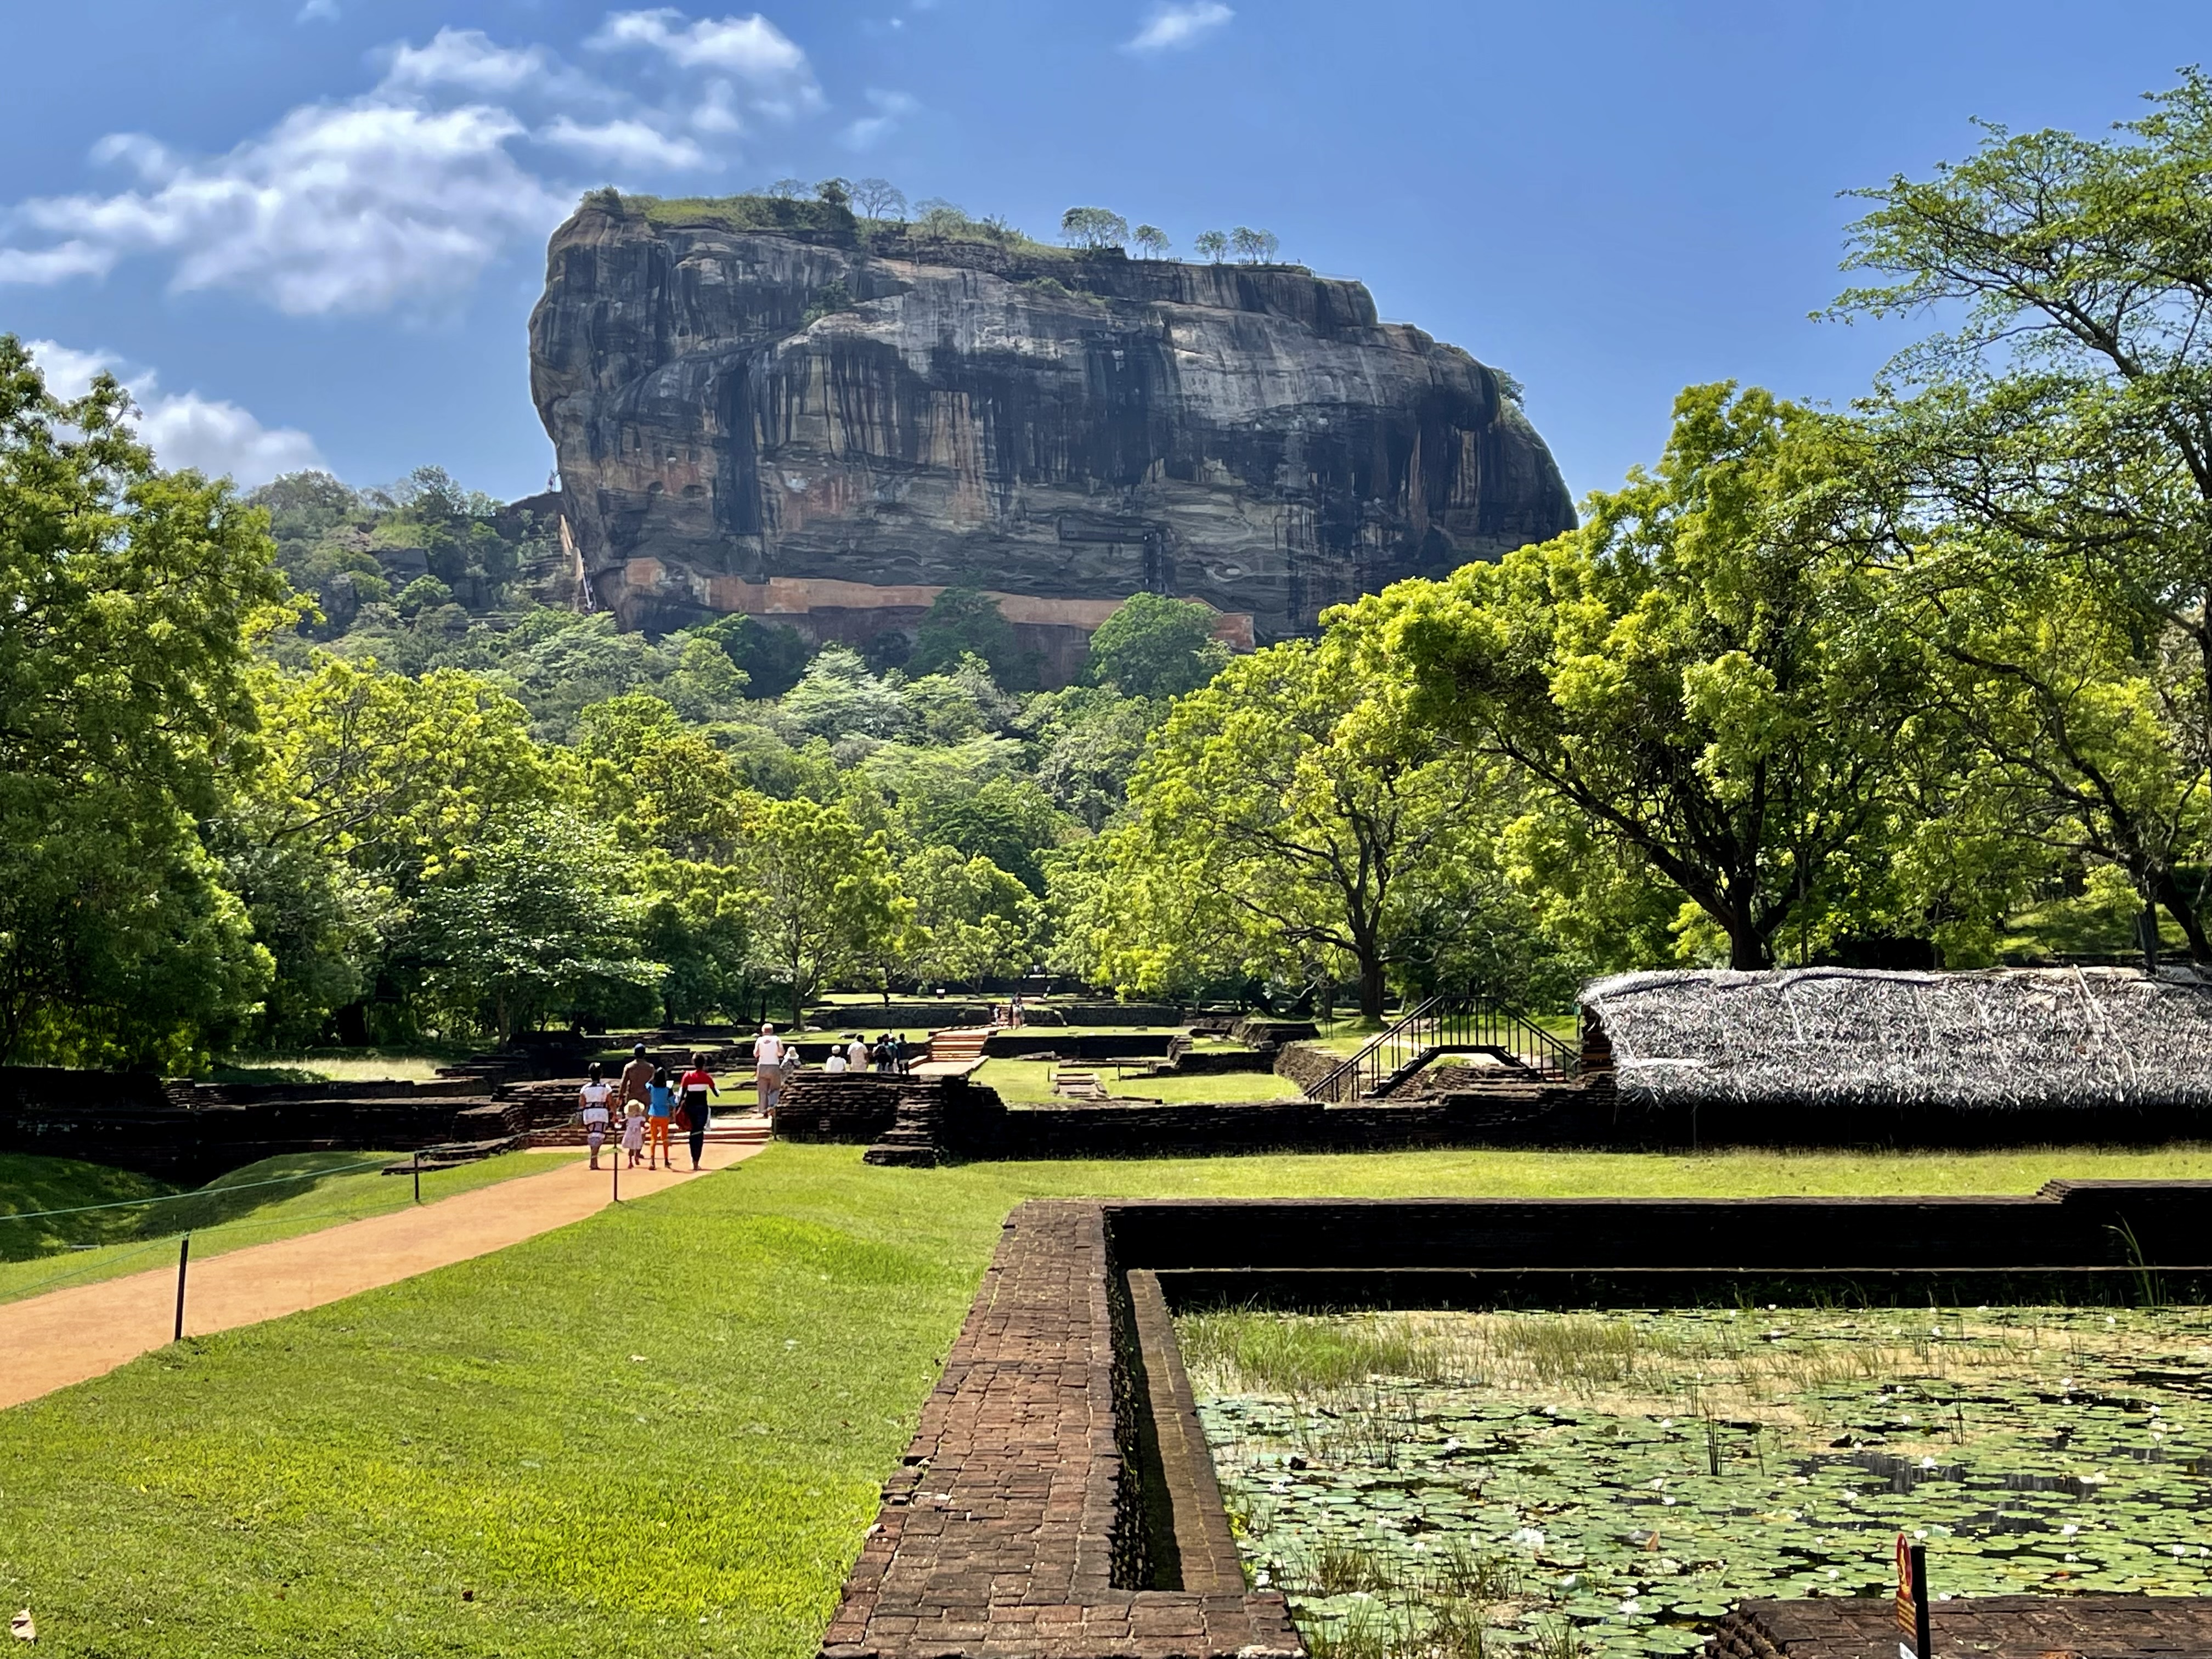 Le Sri Lanka est une destination dépaysante hors des sentiers battus. La larme de l’Inde attire de nombreux Français férus de patrimoine culturel et de cités entourées par des forêts, rizières et plantations de thé. Les amateurs de randonnées, de plage et d’archéologie y trouveront aussi leur bonheur. /crédit JDL